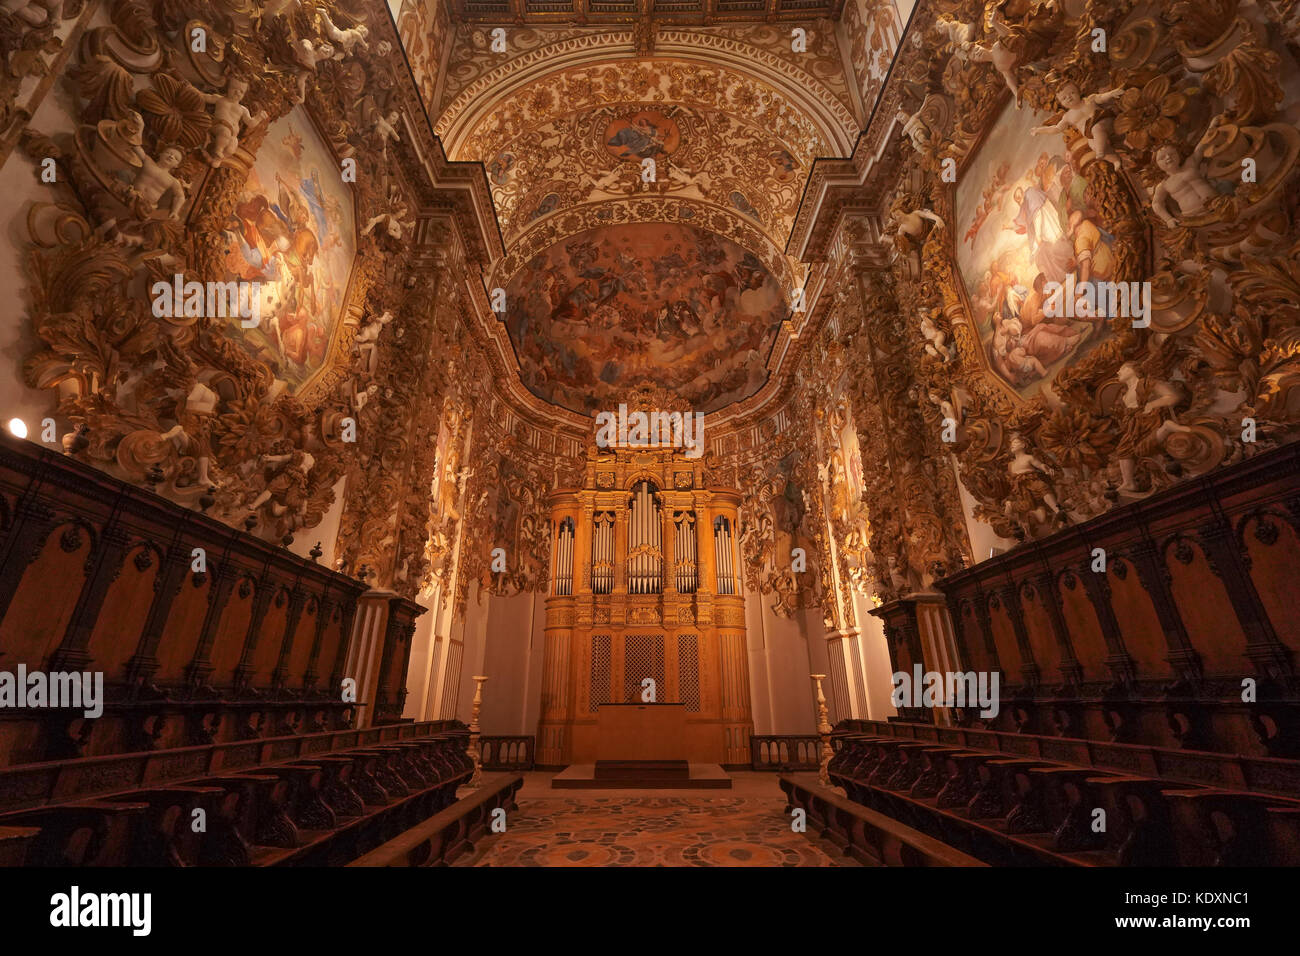 Das Innere der barocken Kathedrale in Agrigento. Aus einer Serie von Fotos in Sizilien, Italien. foto Datum: Donnerstag, 5. Oktober 2017. Foto cred Stockfoto